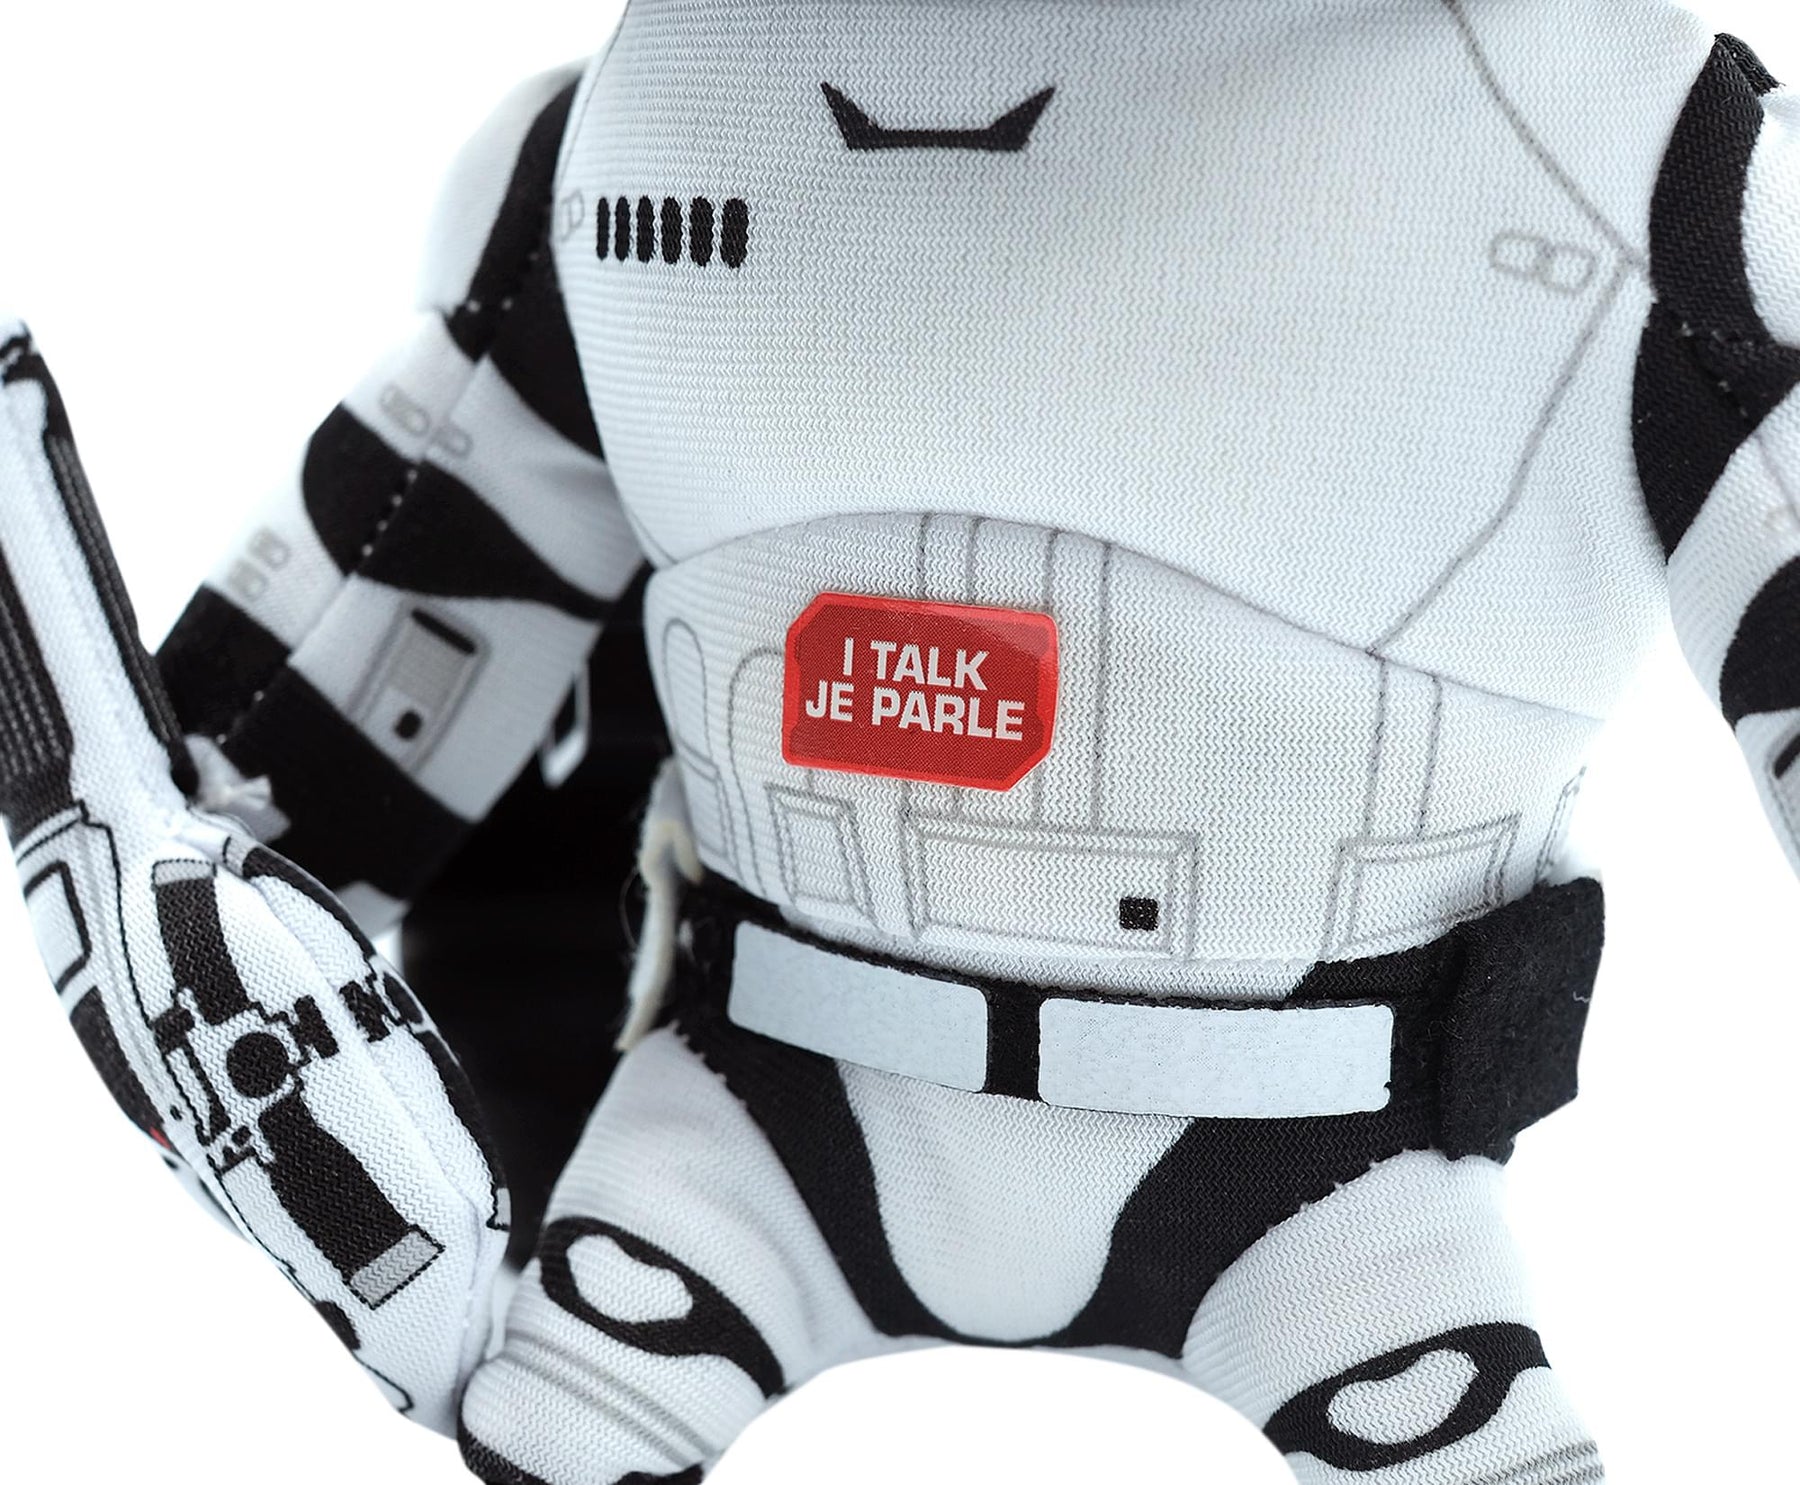 Star Wars 9" Talking Plush: Stormtrooper